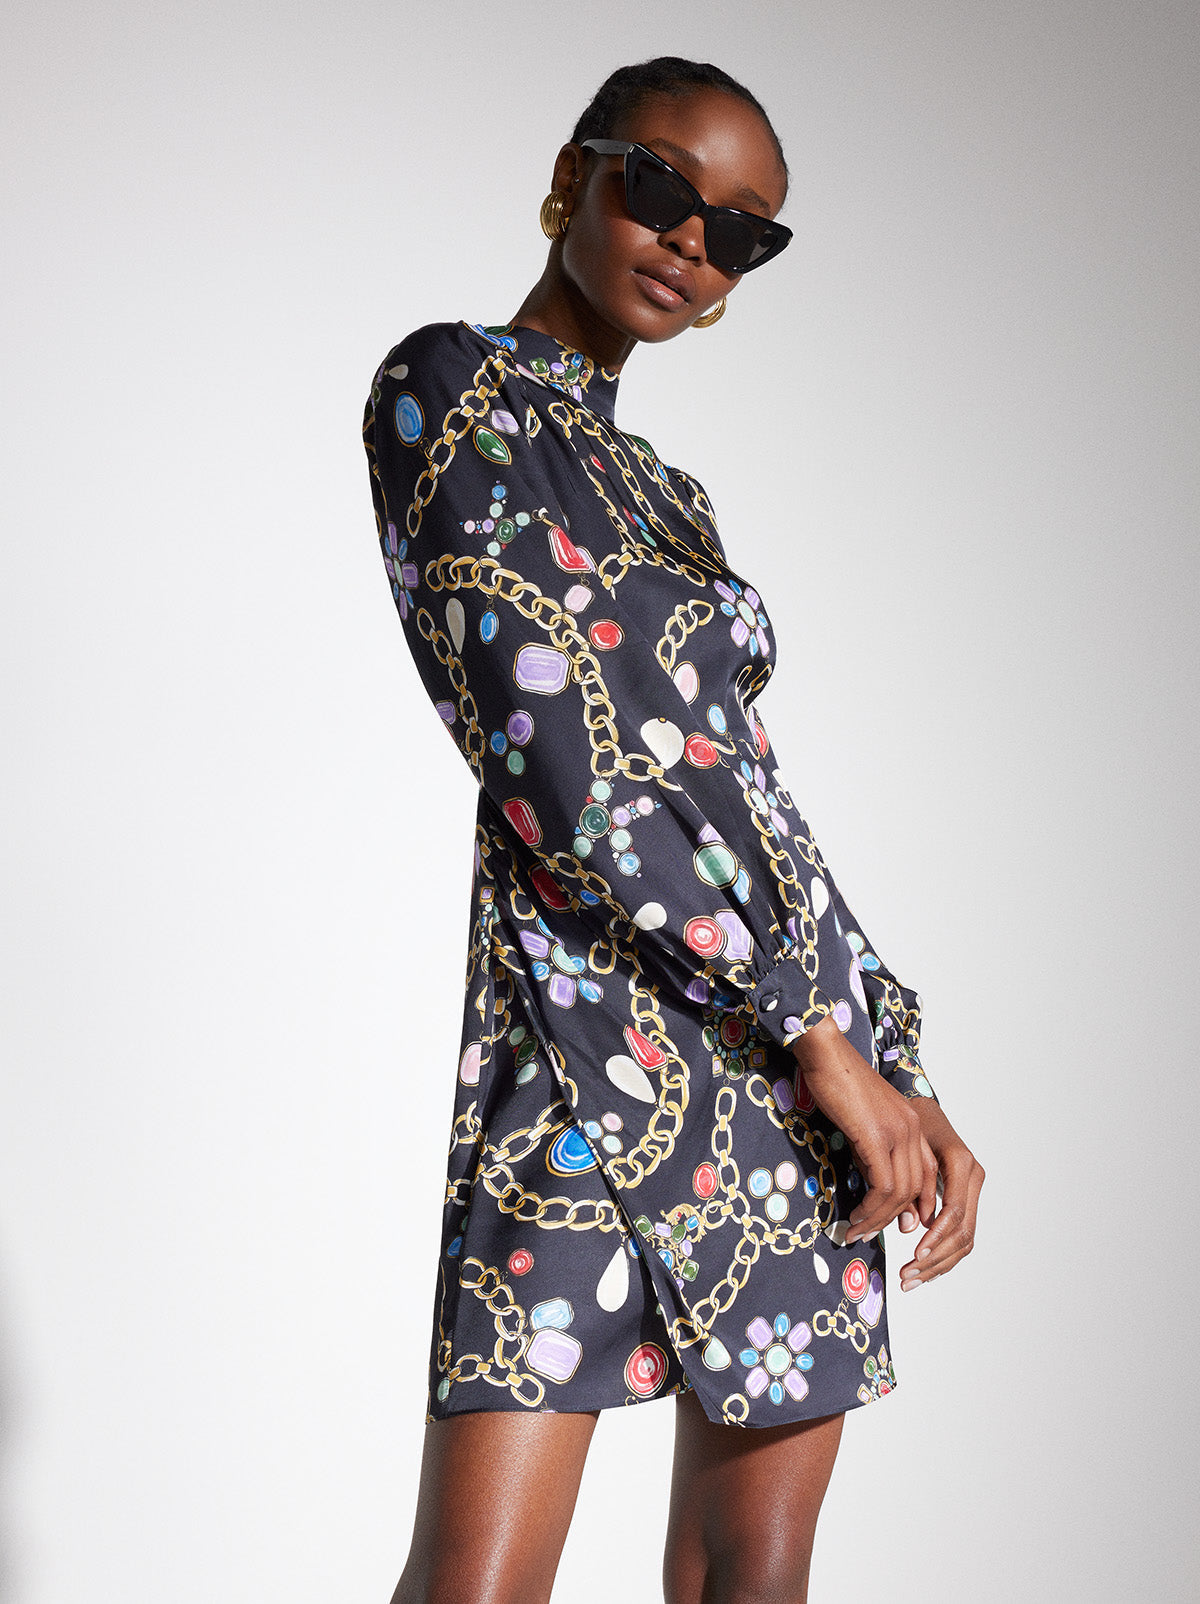 Jessa Black Chain Print Mini Dress | KITRI Studio